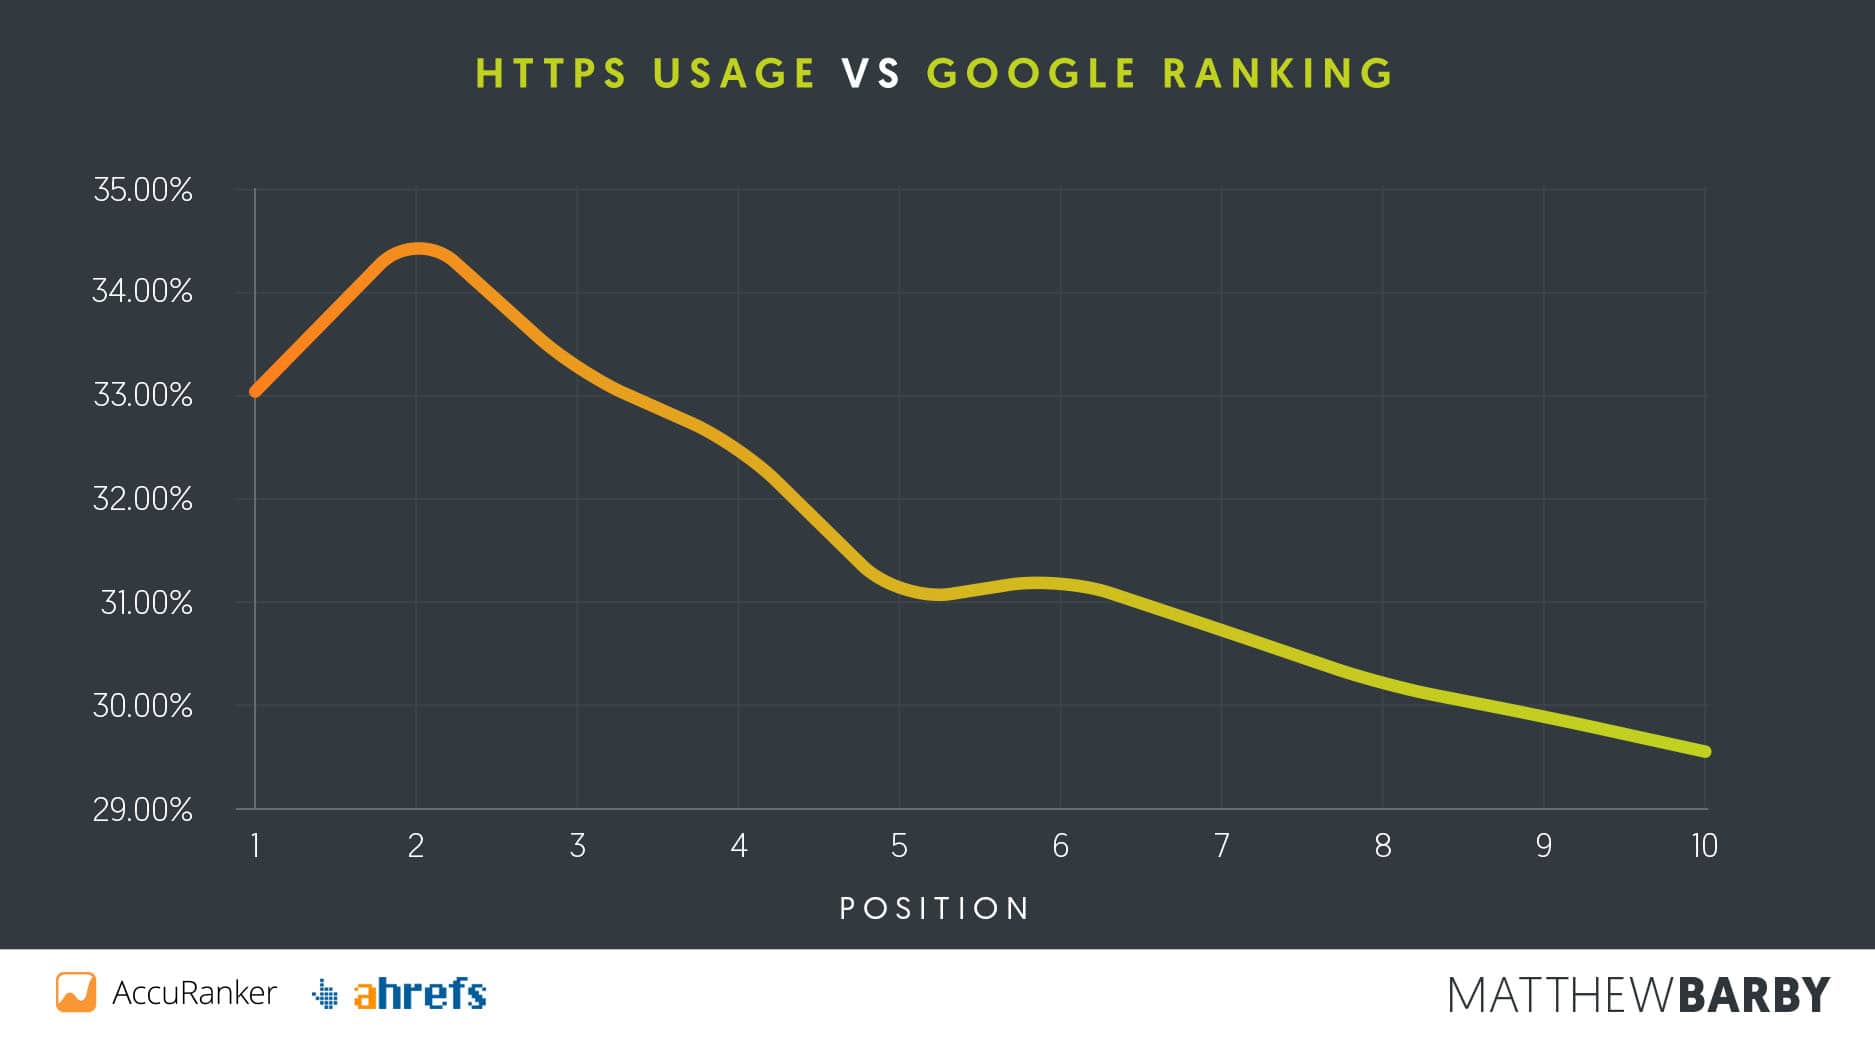 https-usage-vs-google-ranking-1